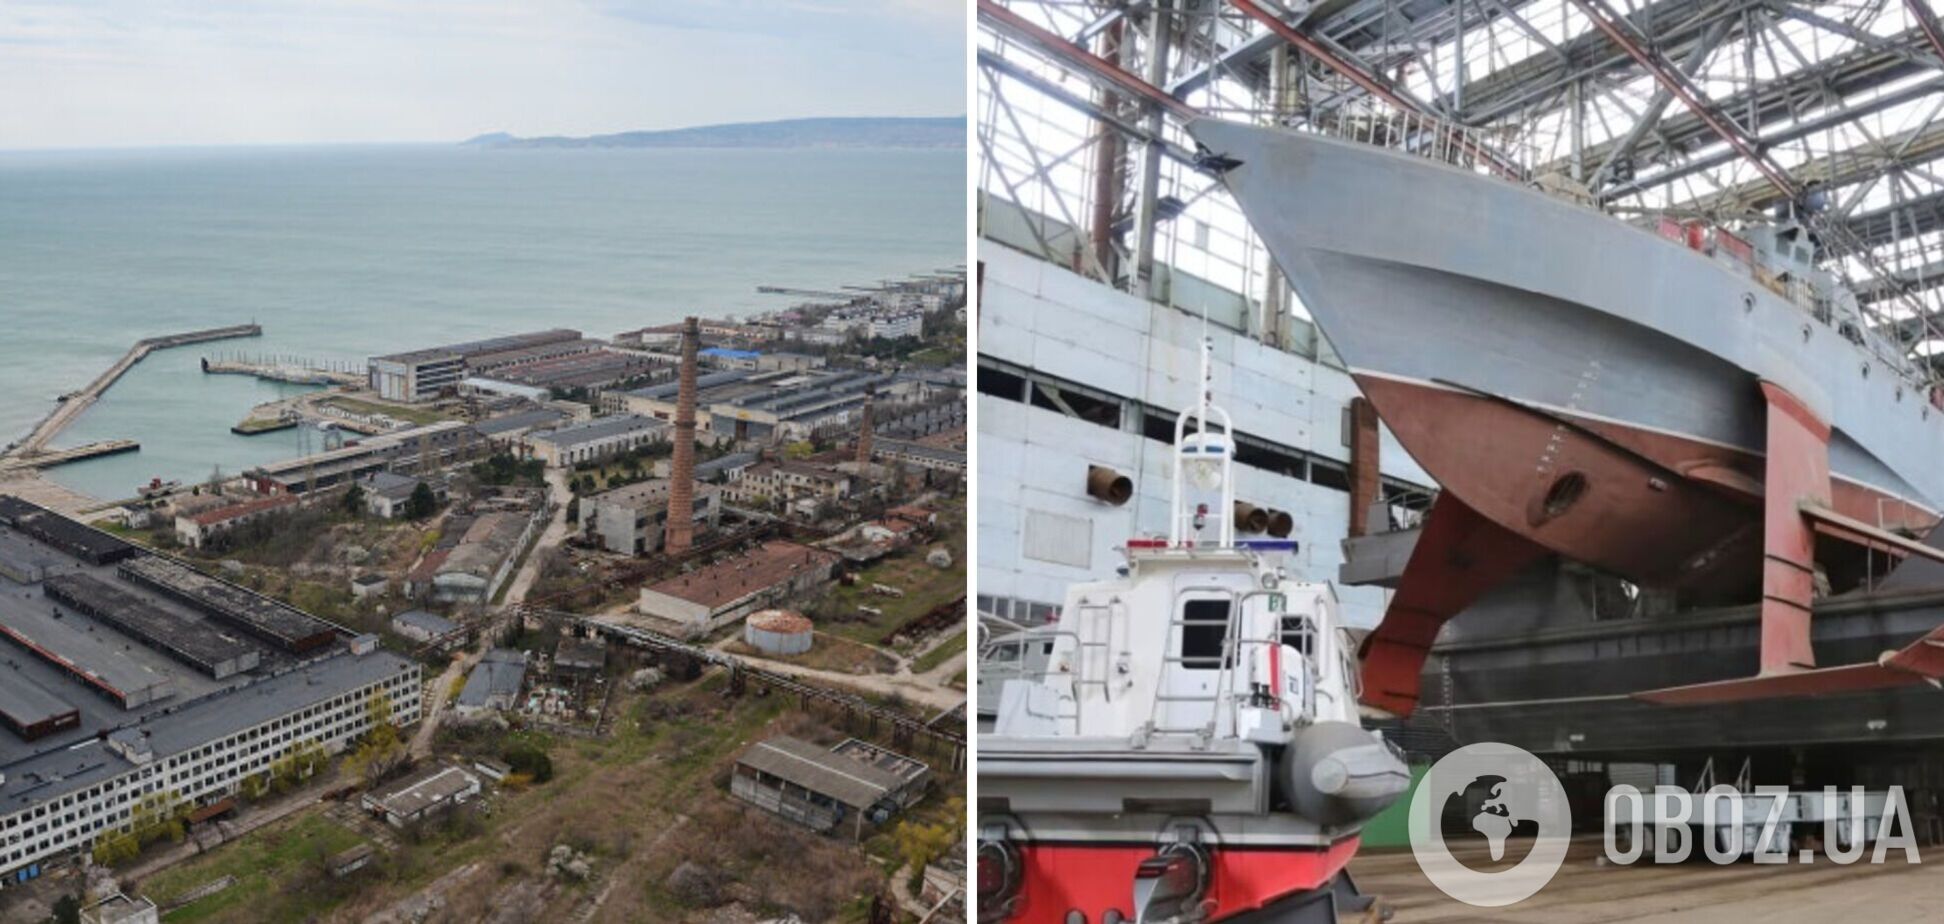 Майно 'списують': окупанти готуються повністю розграбувати суднобудівний завод у Феодосії – ЦНС